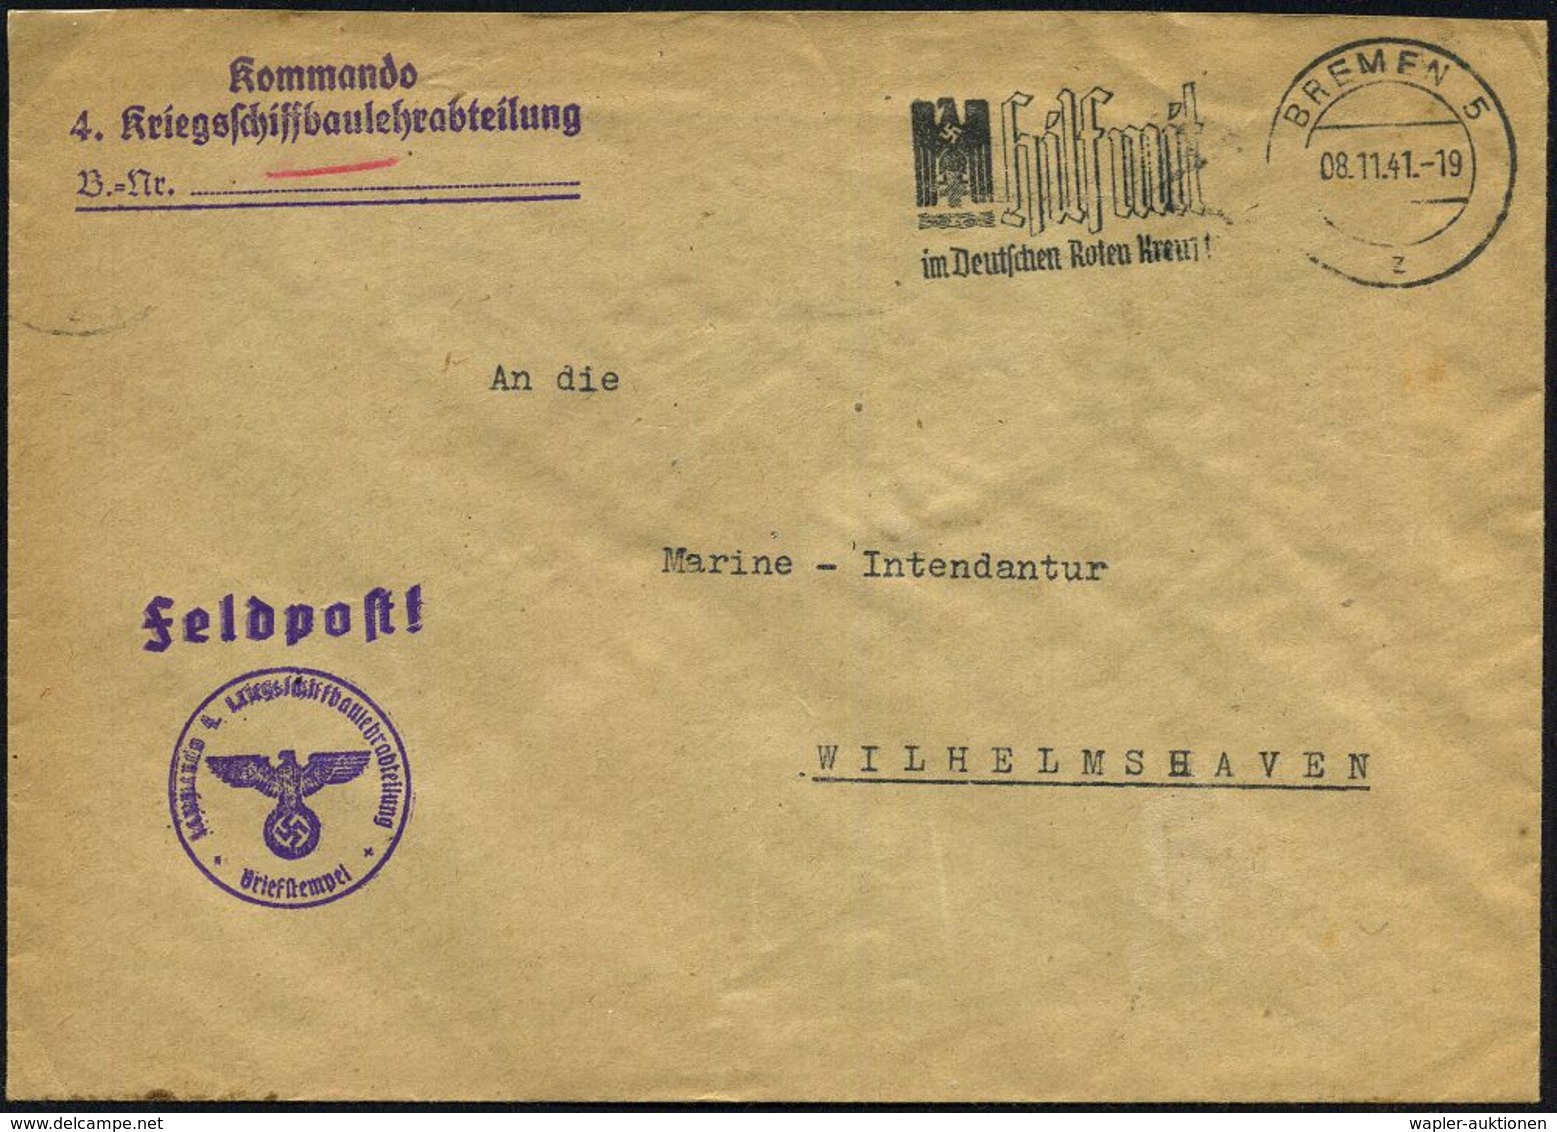 BREMEN 5/ S/ Ein/ Postscheckkonto.. #bzw.# BREMEN 5/ Z/ Hilf Mit/ Im Deutschen Roten Kreuz! 1941 (Nov.) 2 Verschiedene M - Maritime